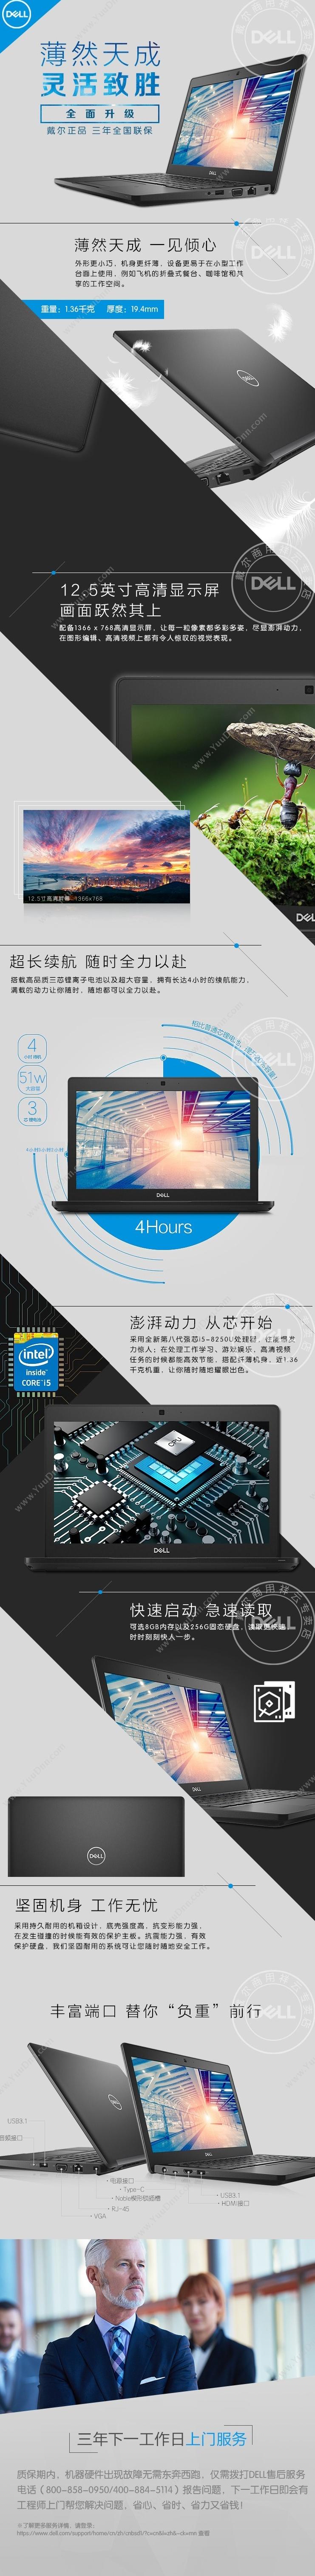 戴尔 Dell Latitude 5290 12.5英寸/i5-8250U/4GB/1TB    /集显/无光驱/winOS/20190919-50 笔记本